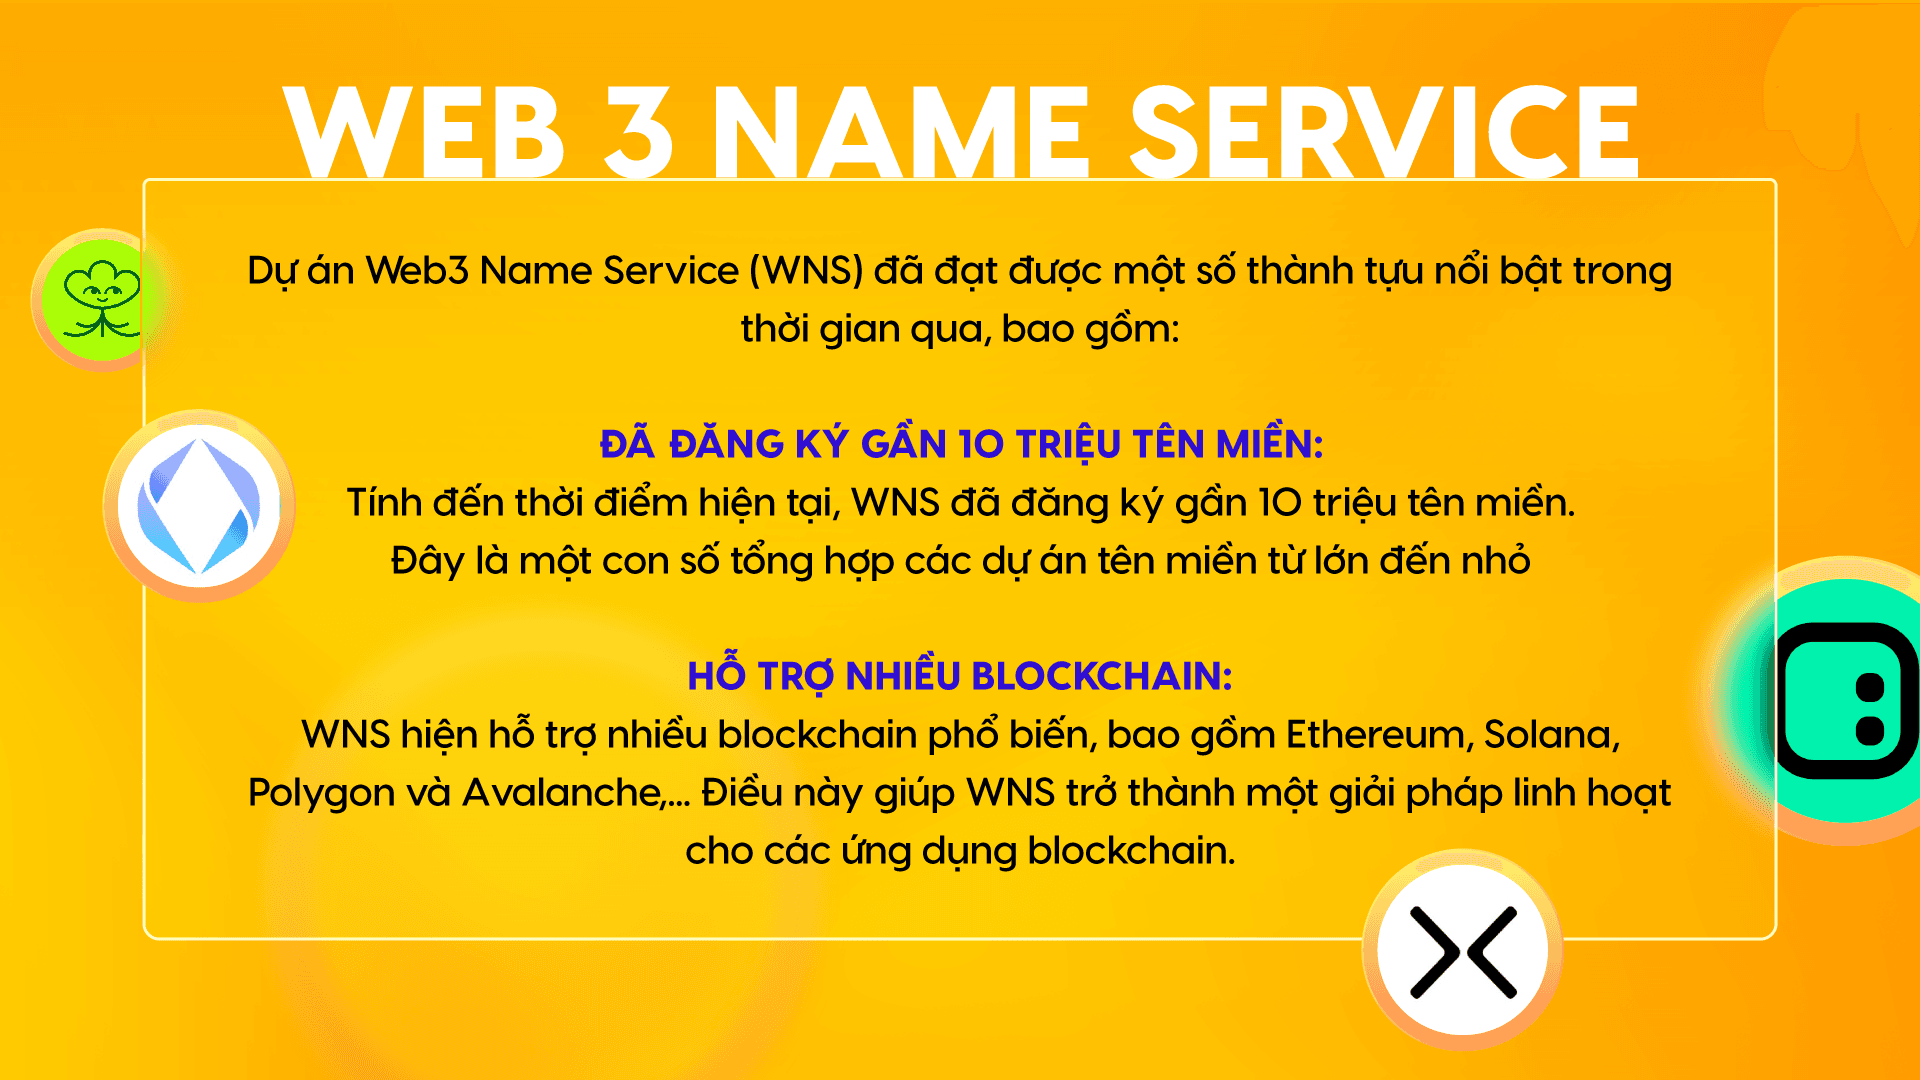 thành tựu của các web 3 name service